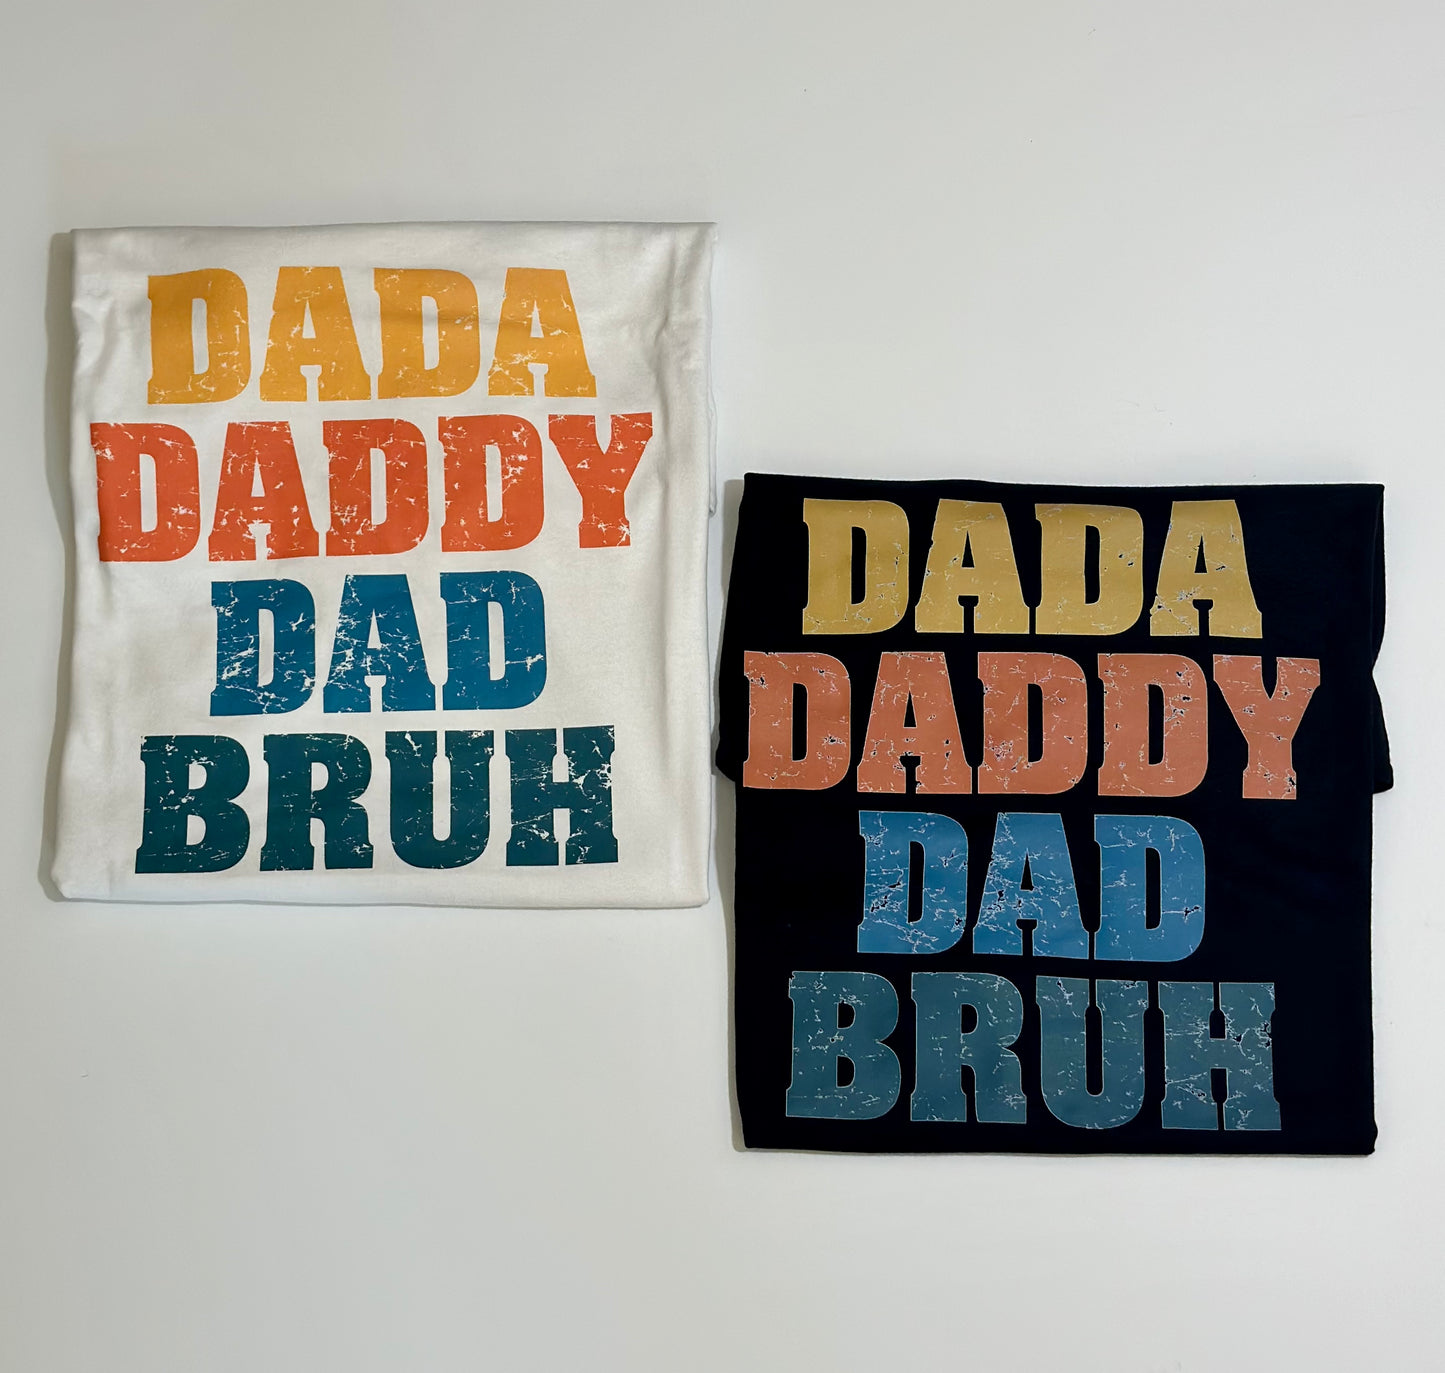 Dada, Daddy, Dad, Bruh T-Shirt